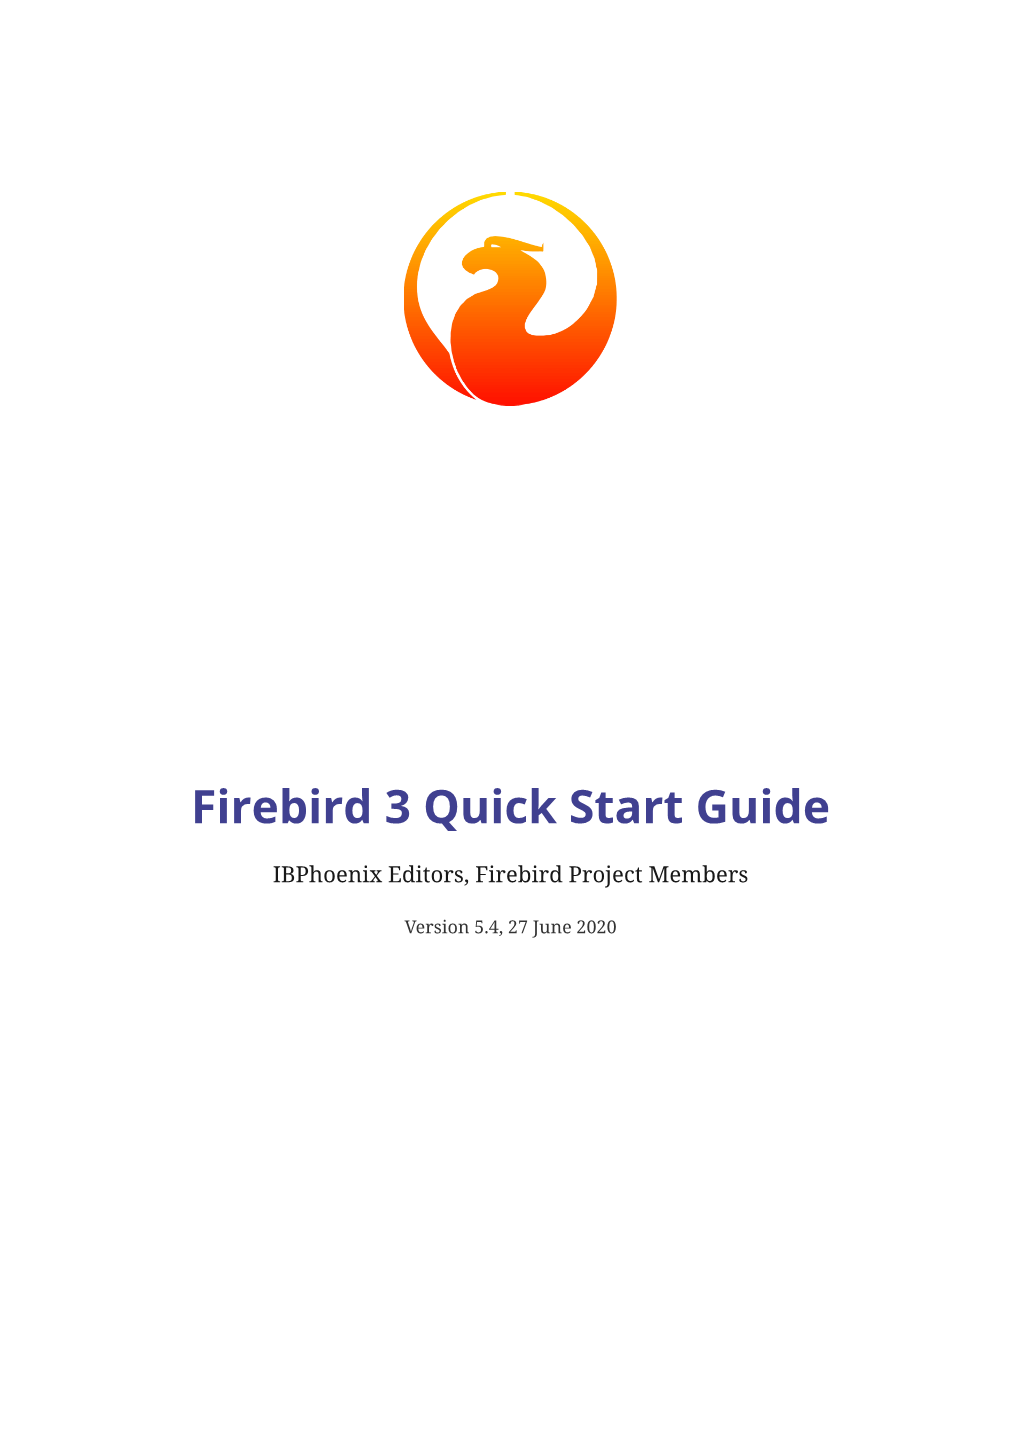 Firebird 3 Quick Start Guide